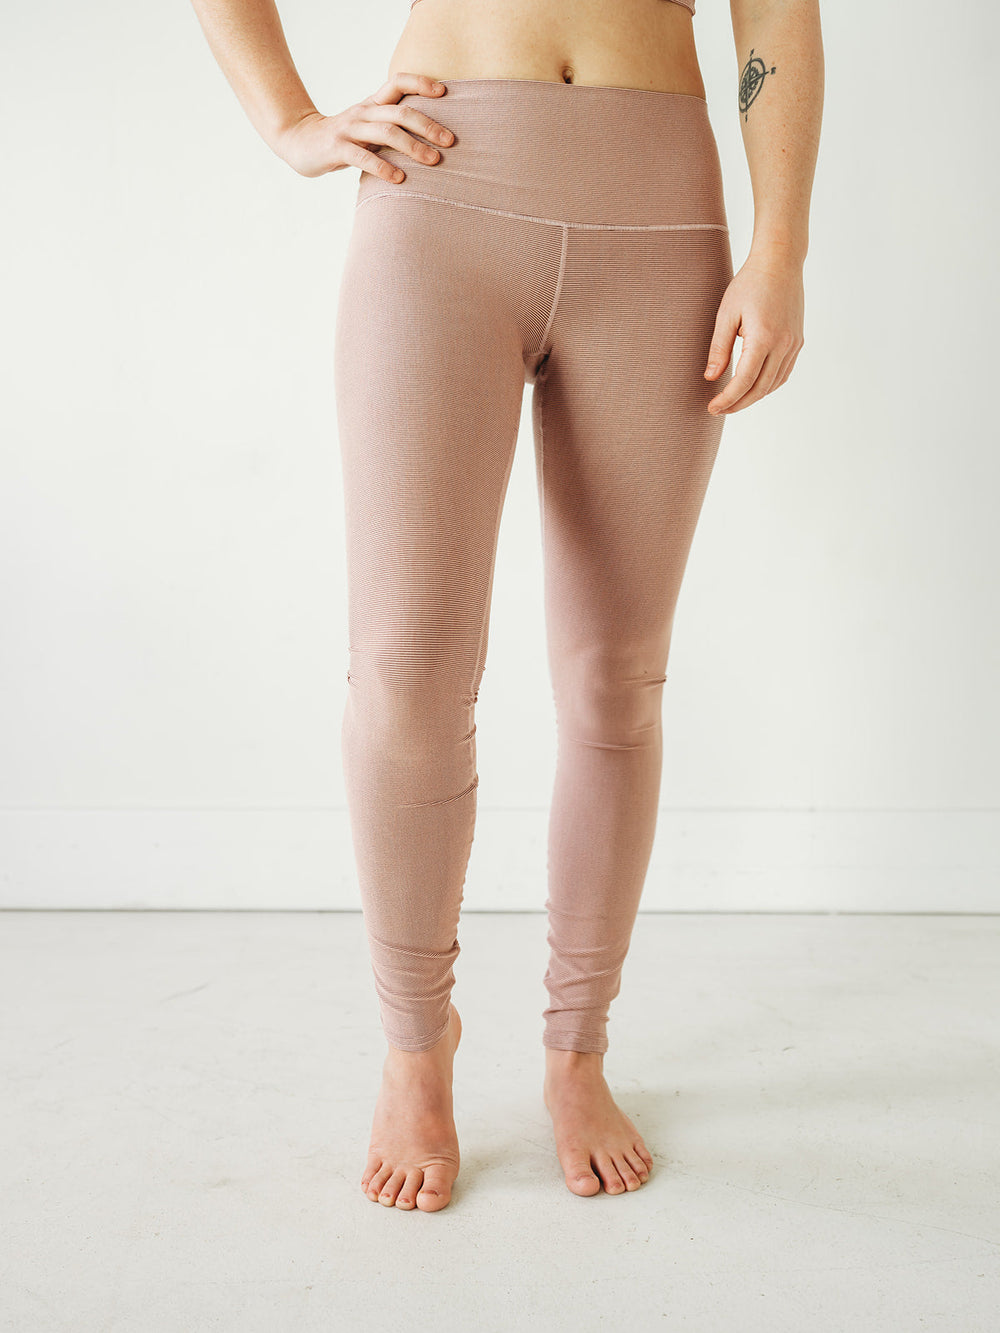 Yoga Pants | Colorado Threads | Blush Microstripe Yoga Pants